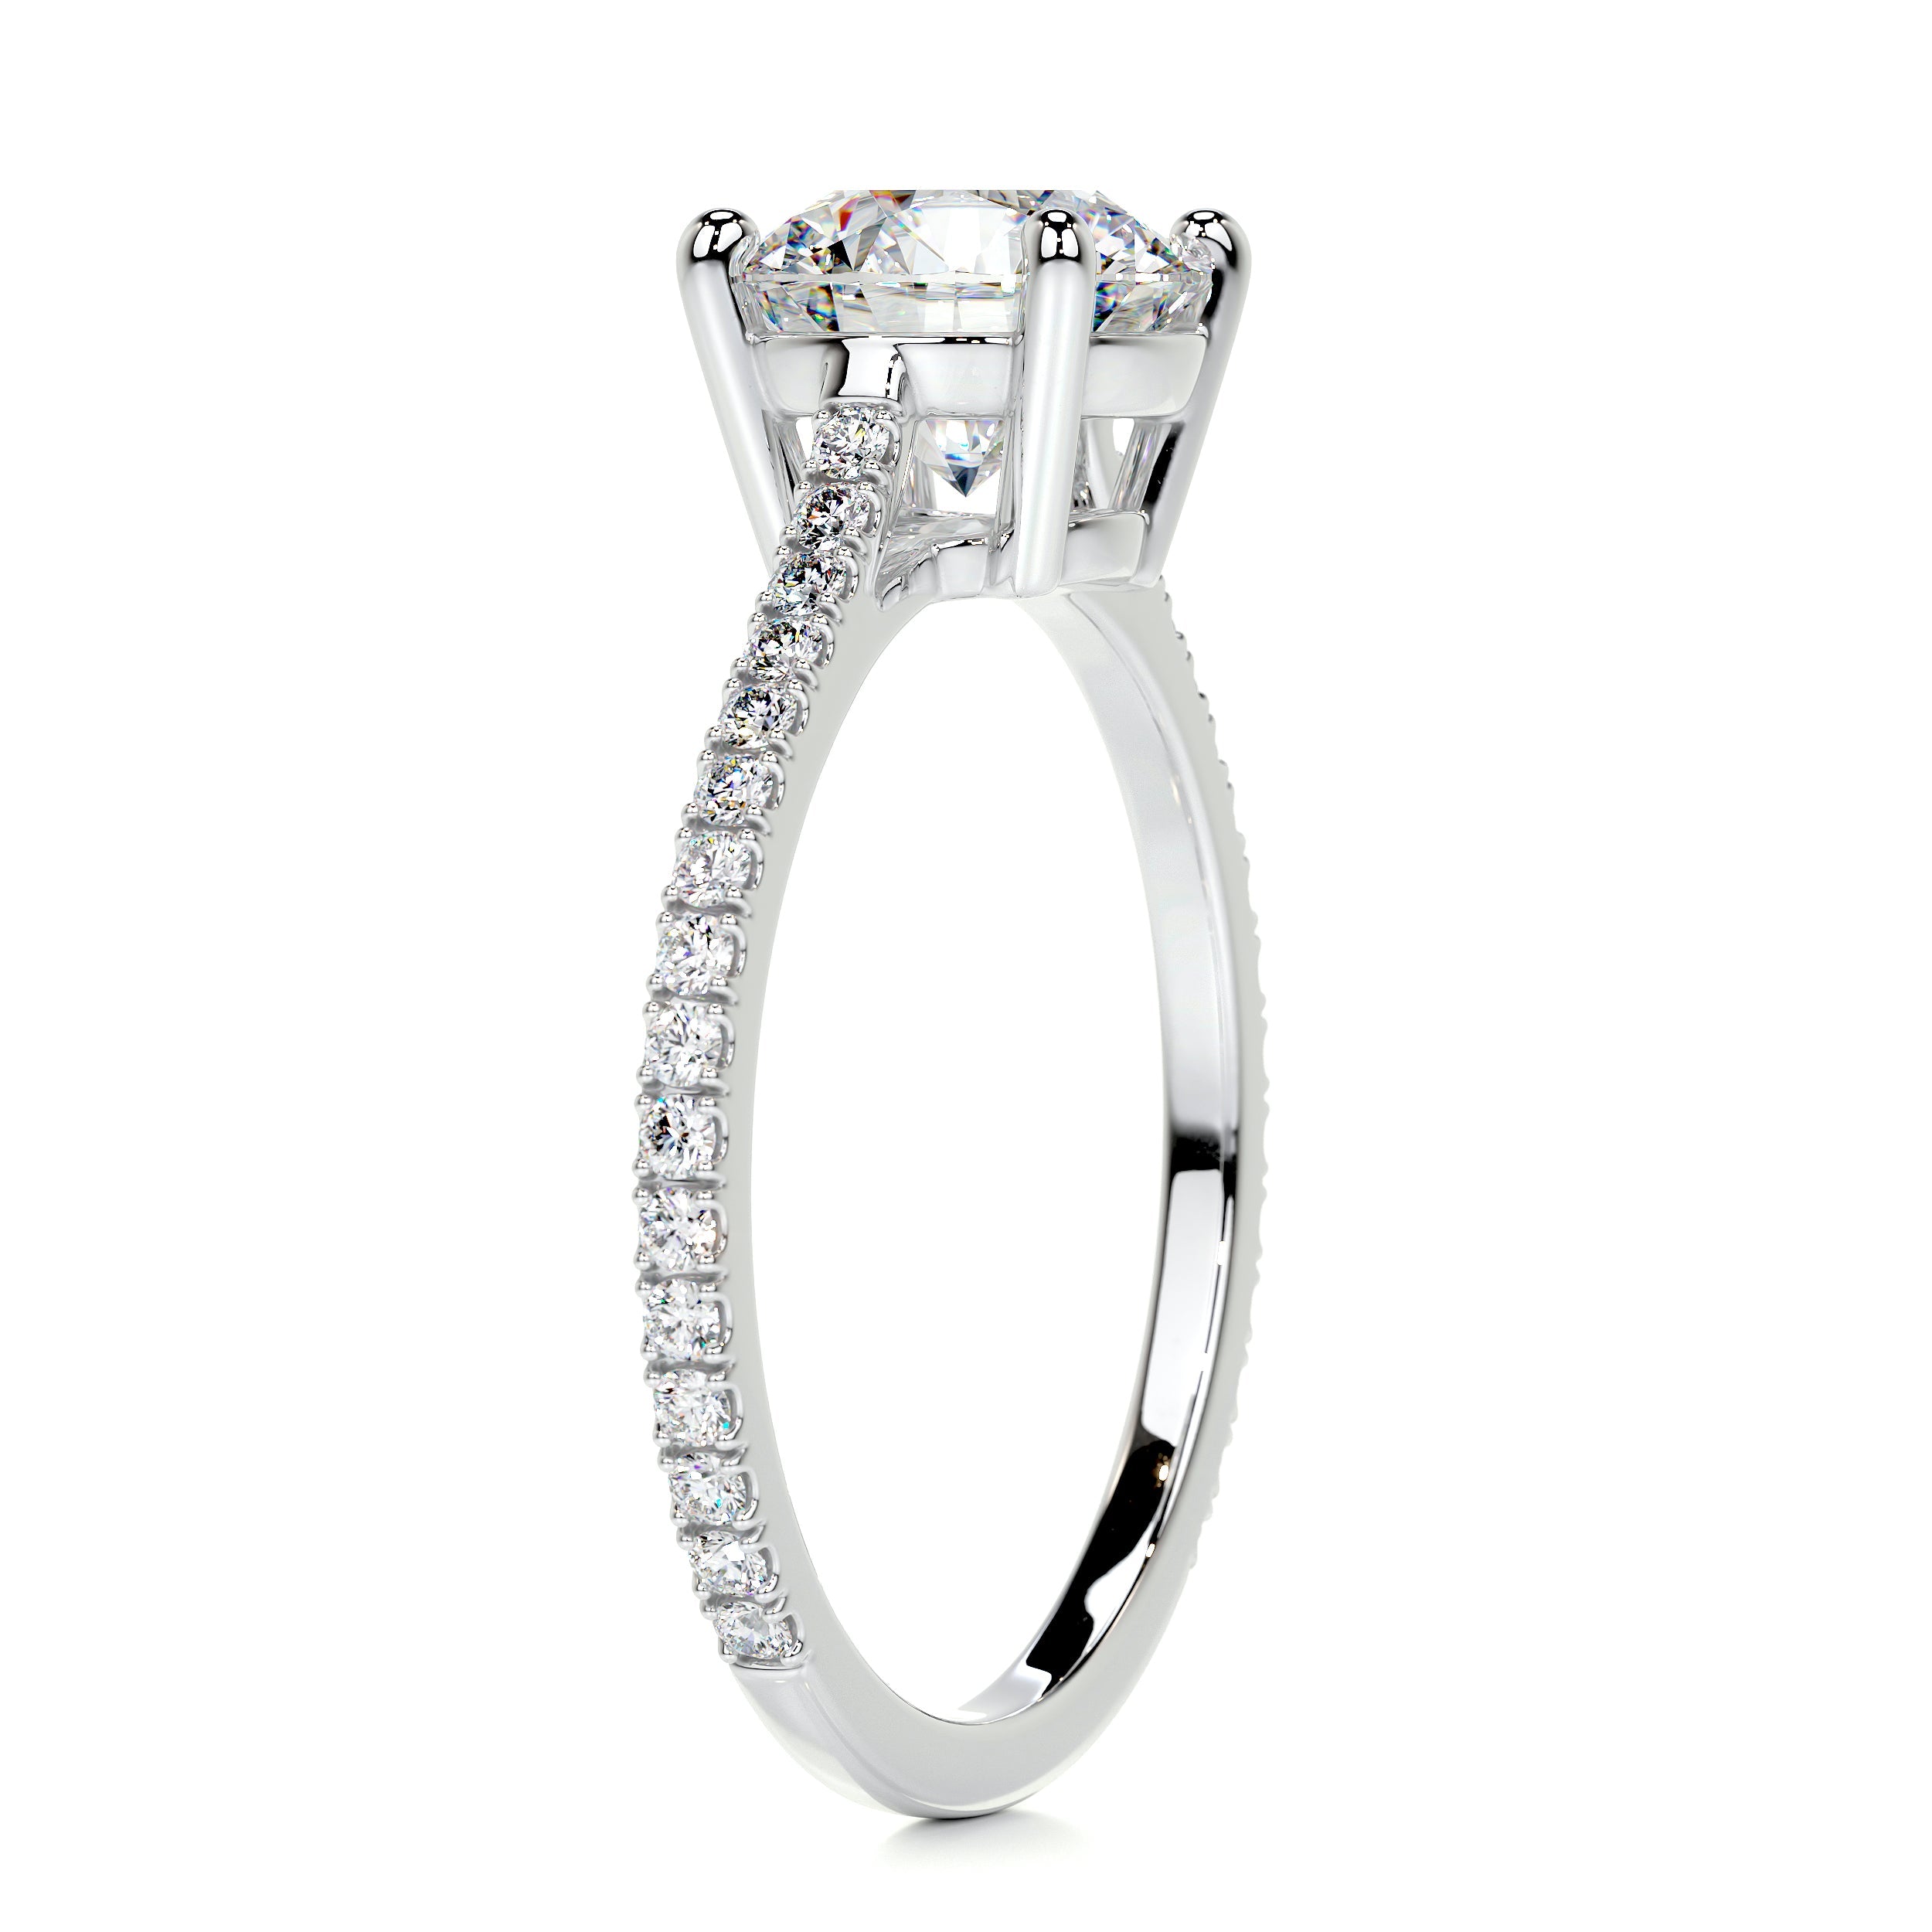 Anna Moissanite & Diamonds Ring   (2.25 Carat) -14K White Gold (RTS)